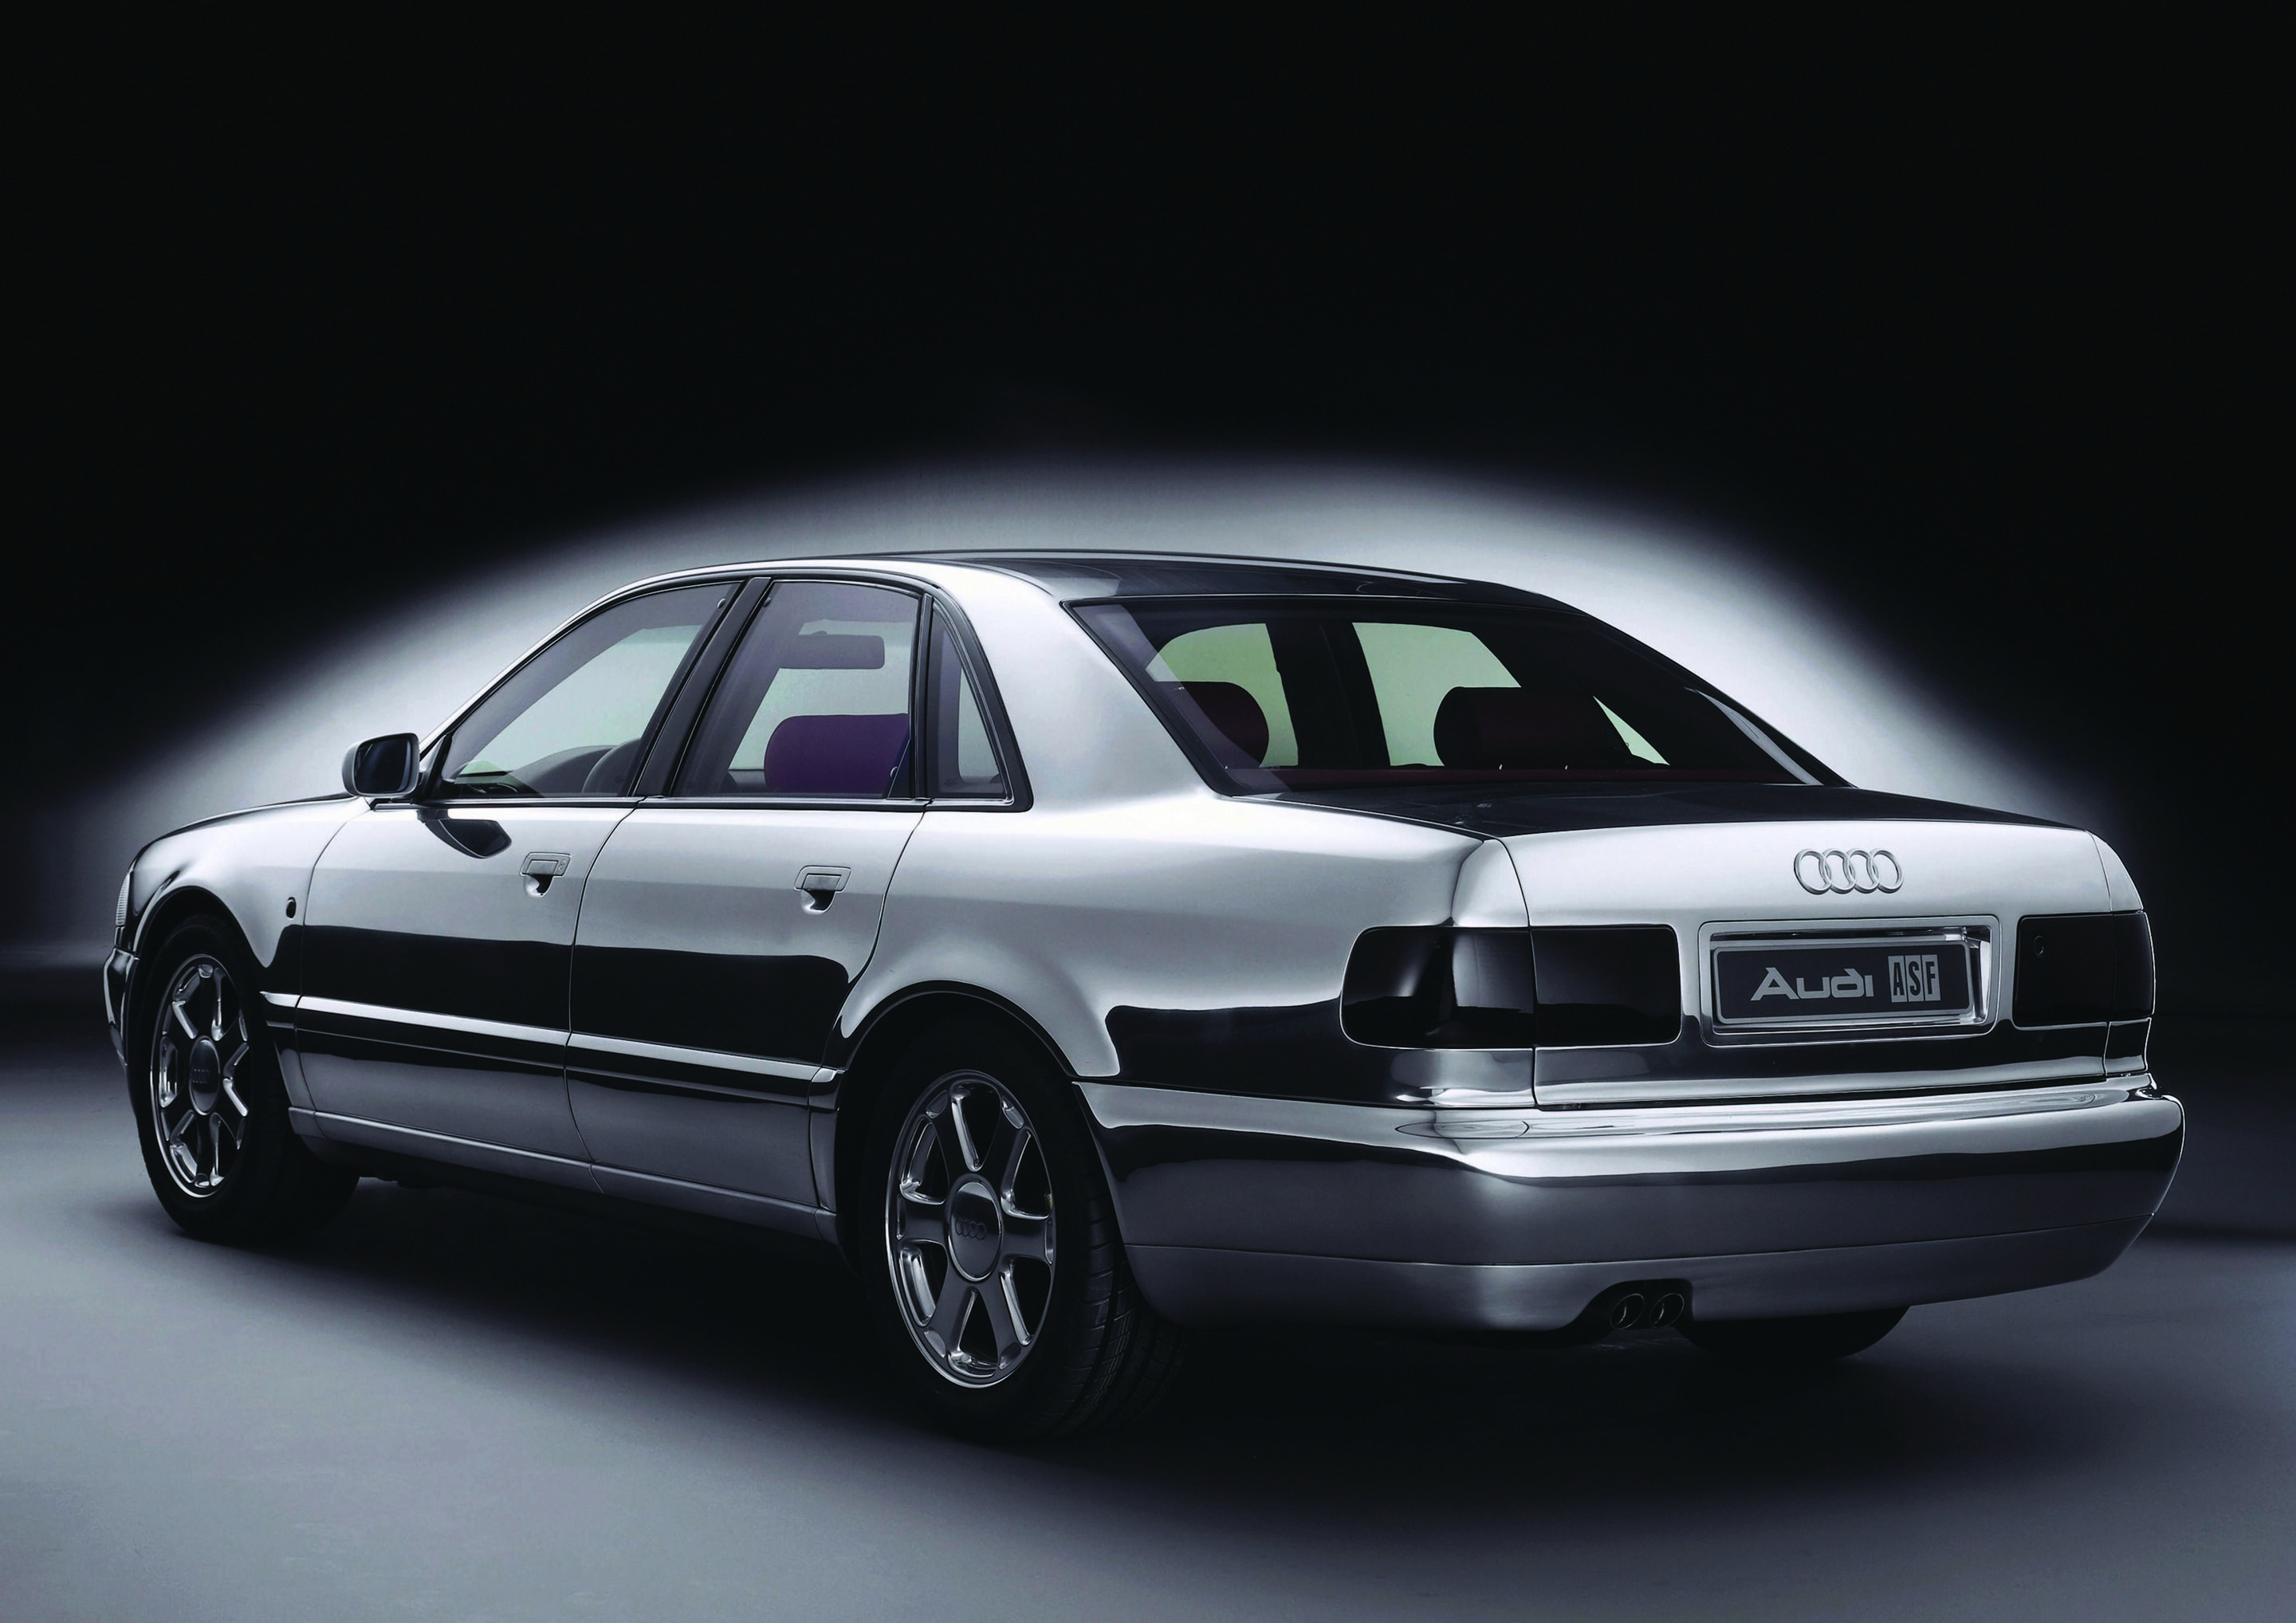 20 Jahre Audi Space Frame – Siegeszug begann auf der IAA